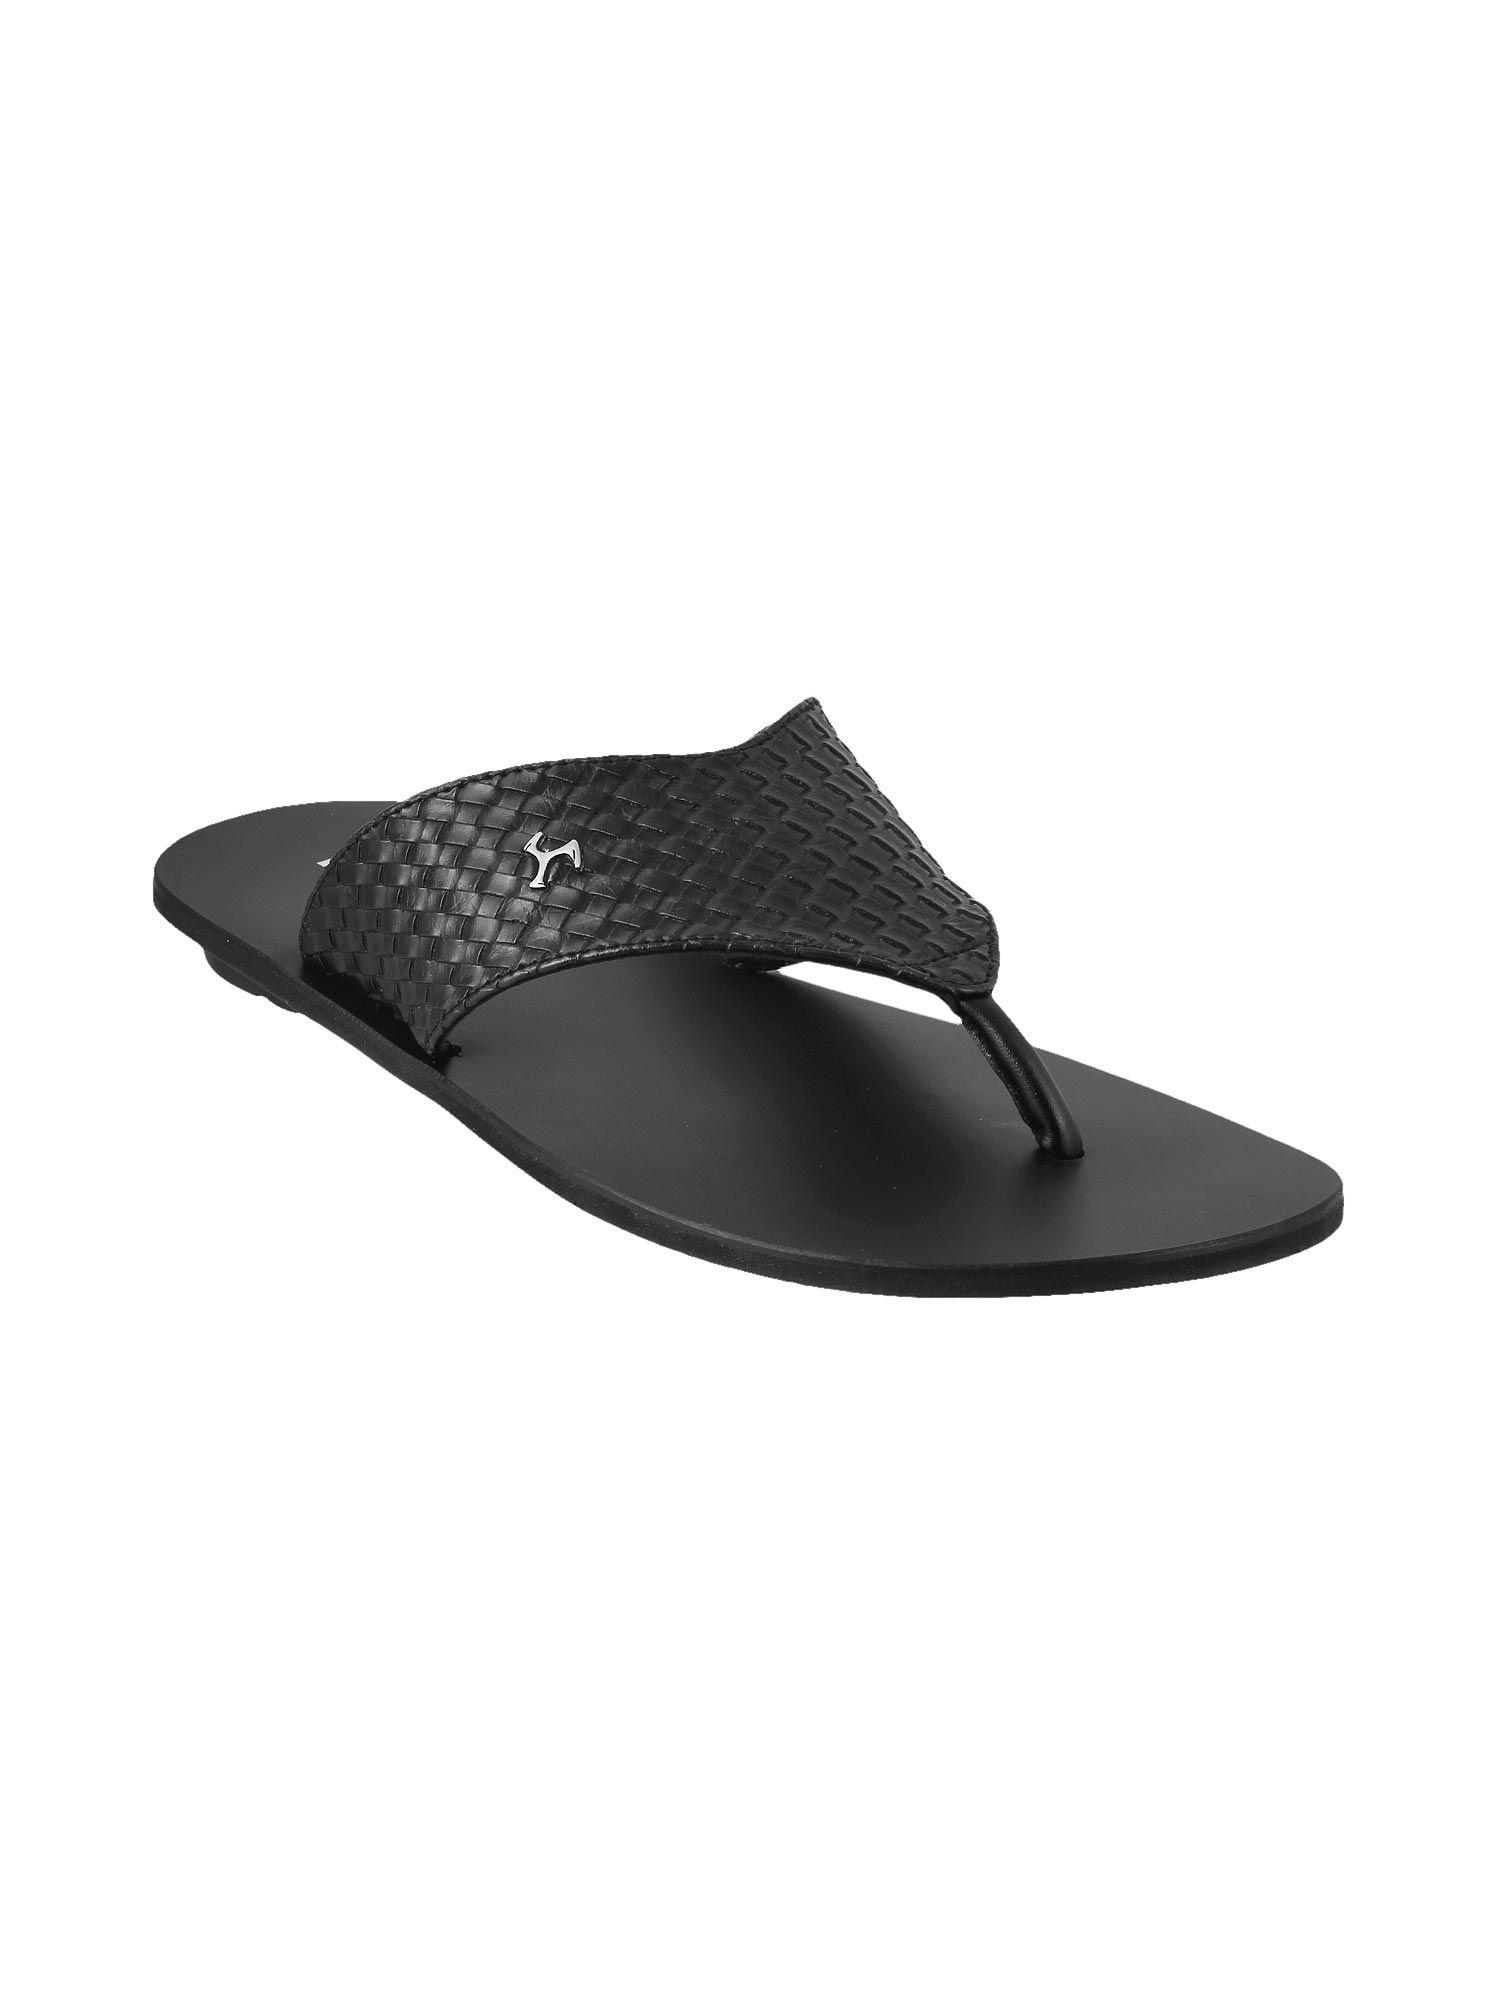 mens-black-chappals-mochi-mens-black-sandals